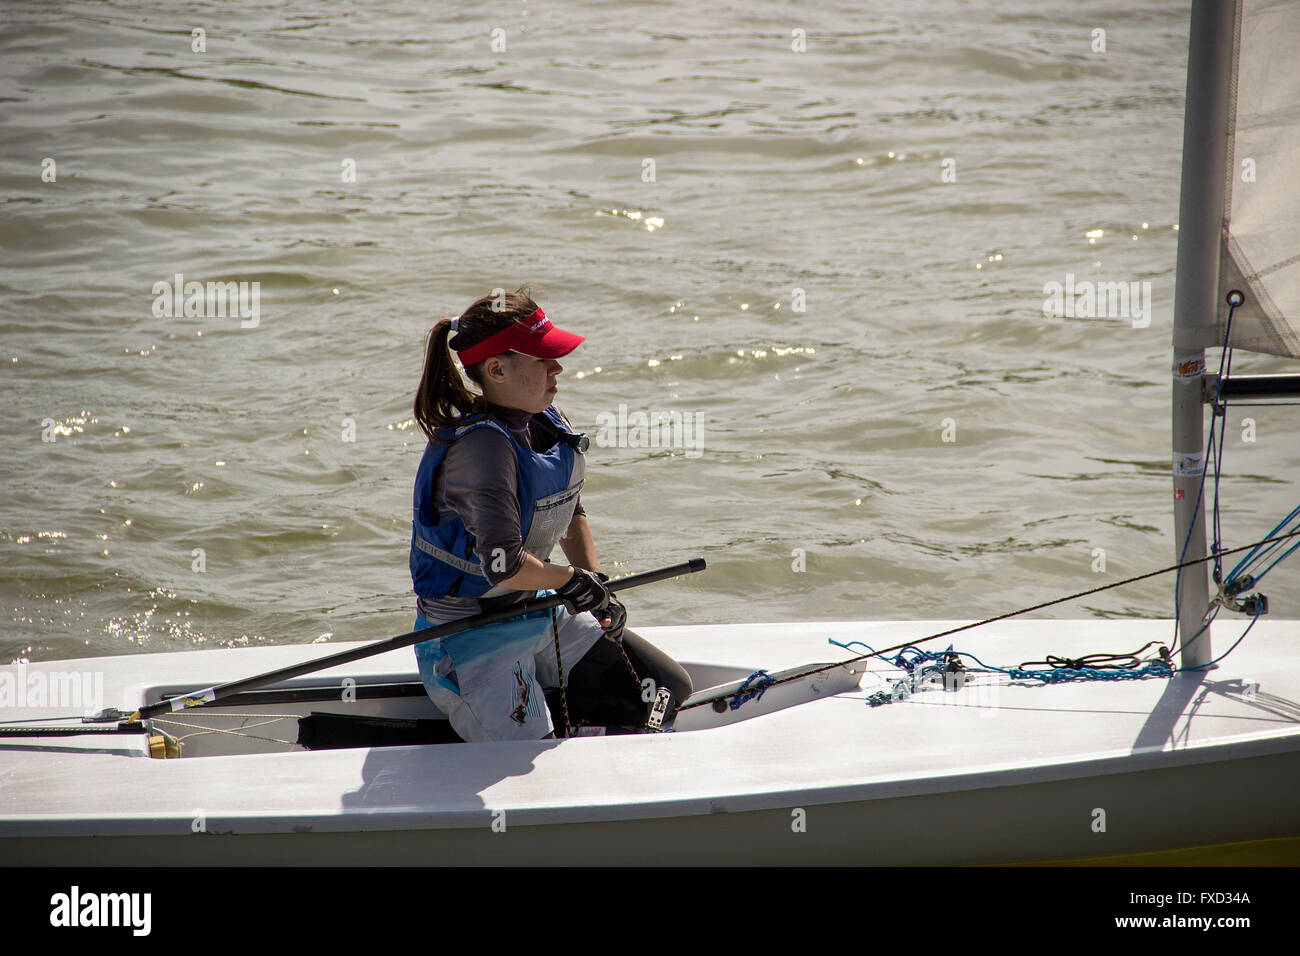 Belgrado, Serbia - ragazza adolescente, membro del Club di vela "Gemax", la formazione in un laser-class yacht a vela presso il fiume Sava Foto Stock